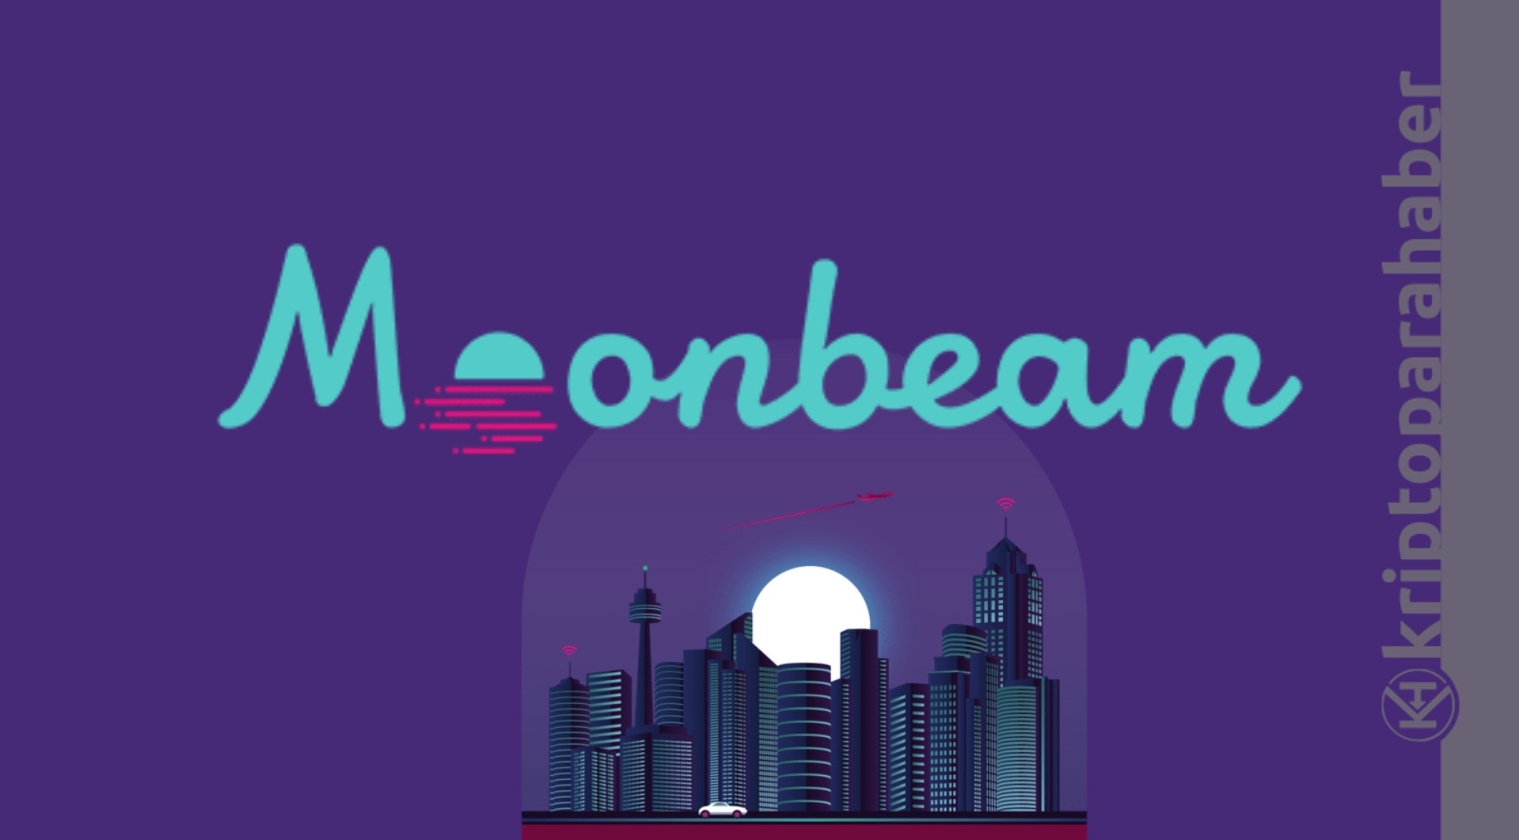 Moonbeam sonunda Polkadot'ta: GLMR tokeni, yatırımcıların yeni gözde mi olacak?